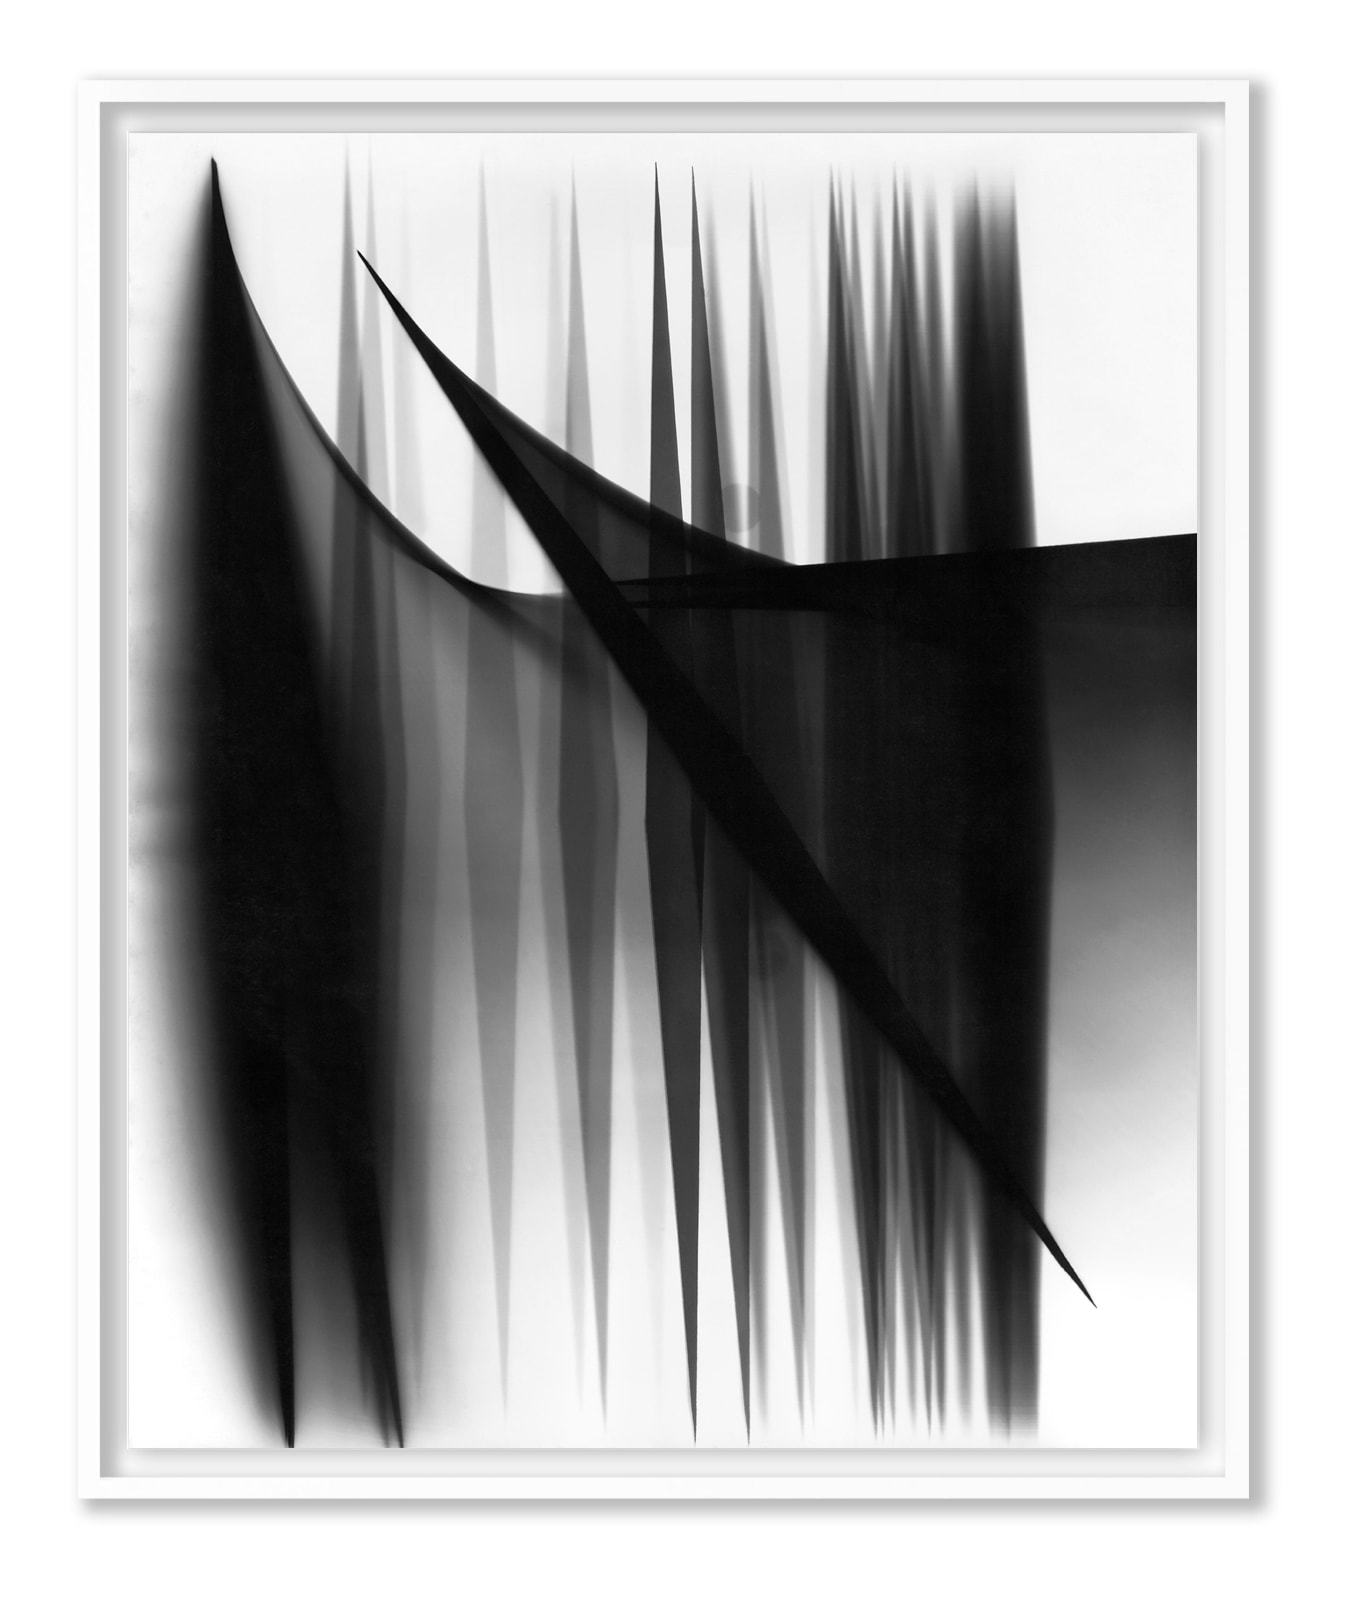 William Klein, Abstract #5, Paris, 1952